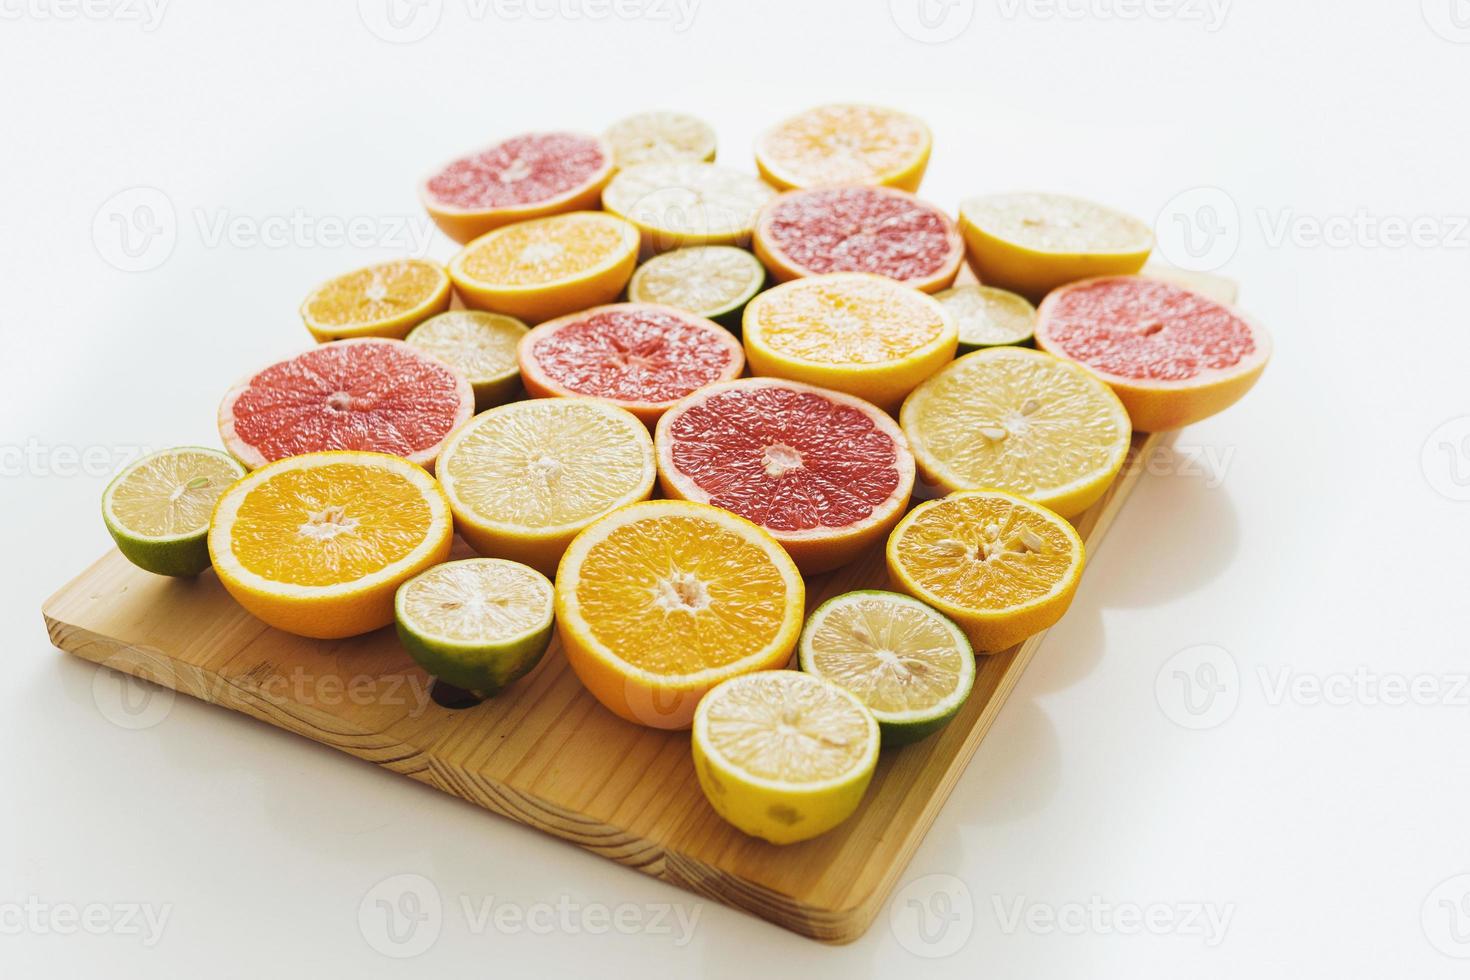 skivad citrus- frukt sådan som grapefrukt, orange, citron- och kalk på skärande styrelse mot vit bakgrund foto